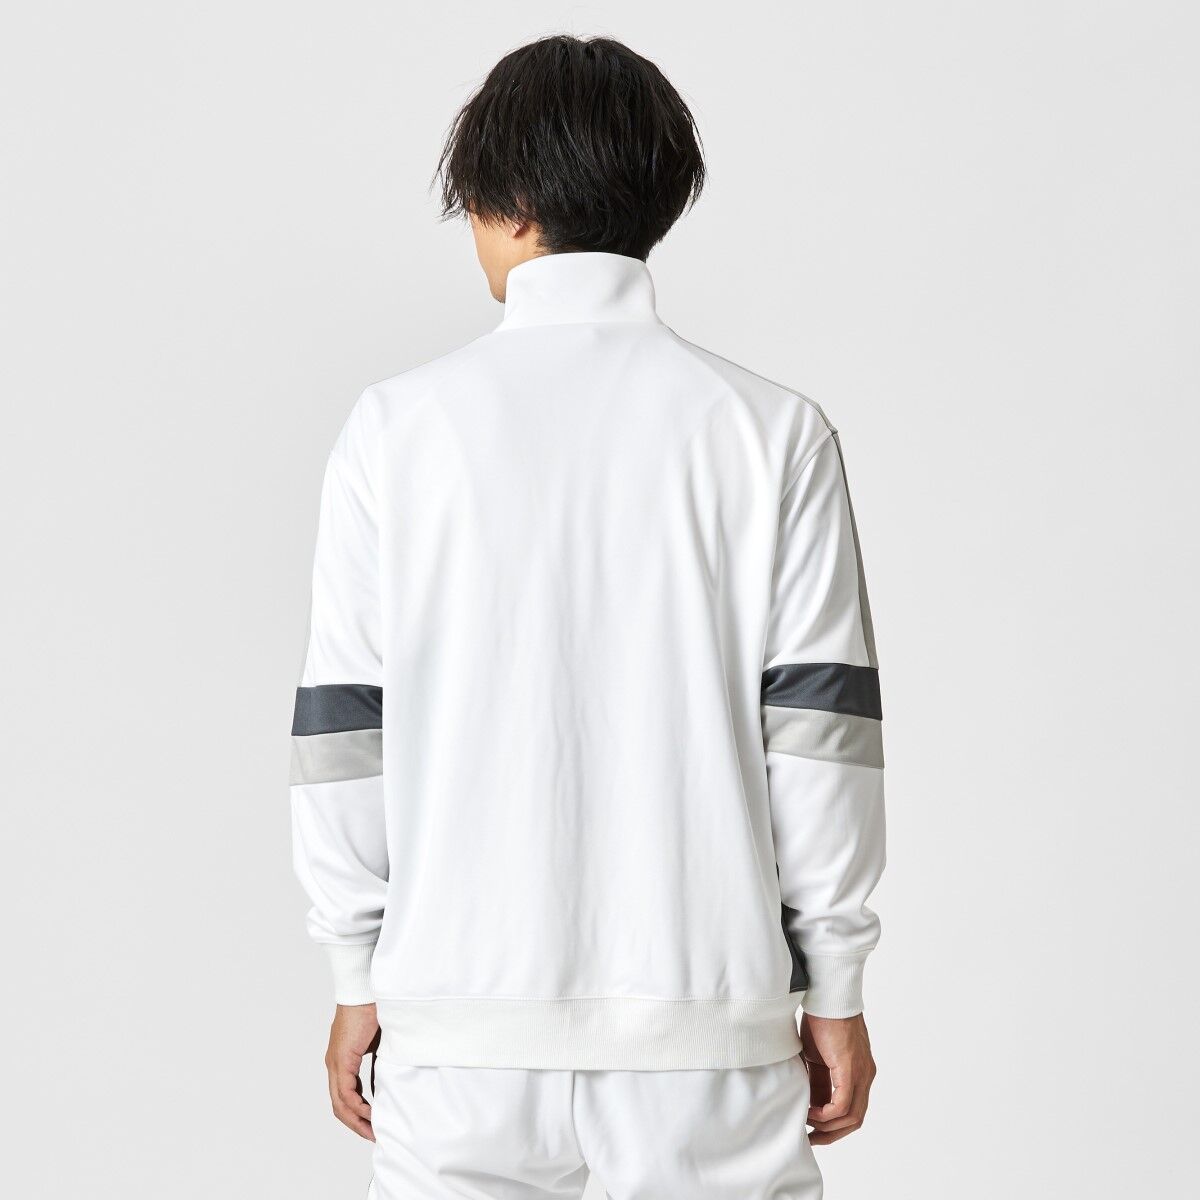 Kamen Rider Revice Fenix Sweatsuit Jacket 